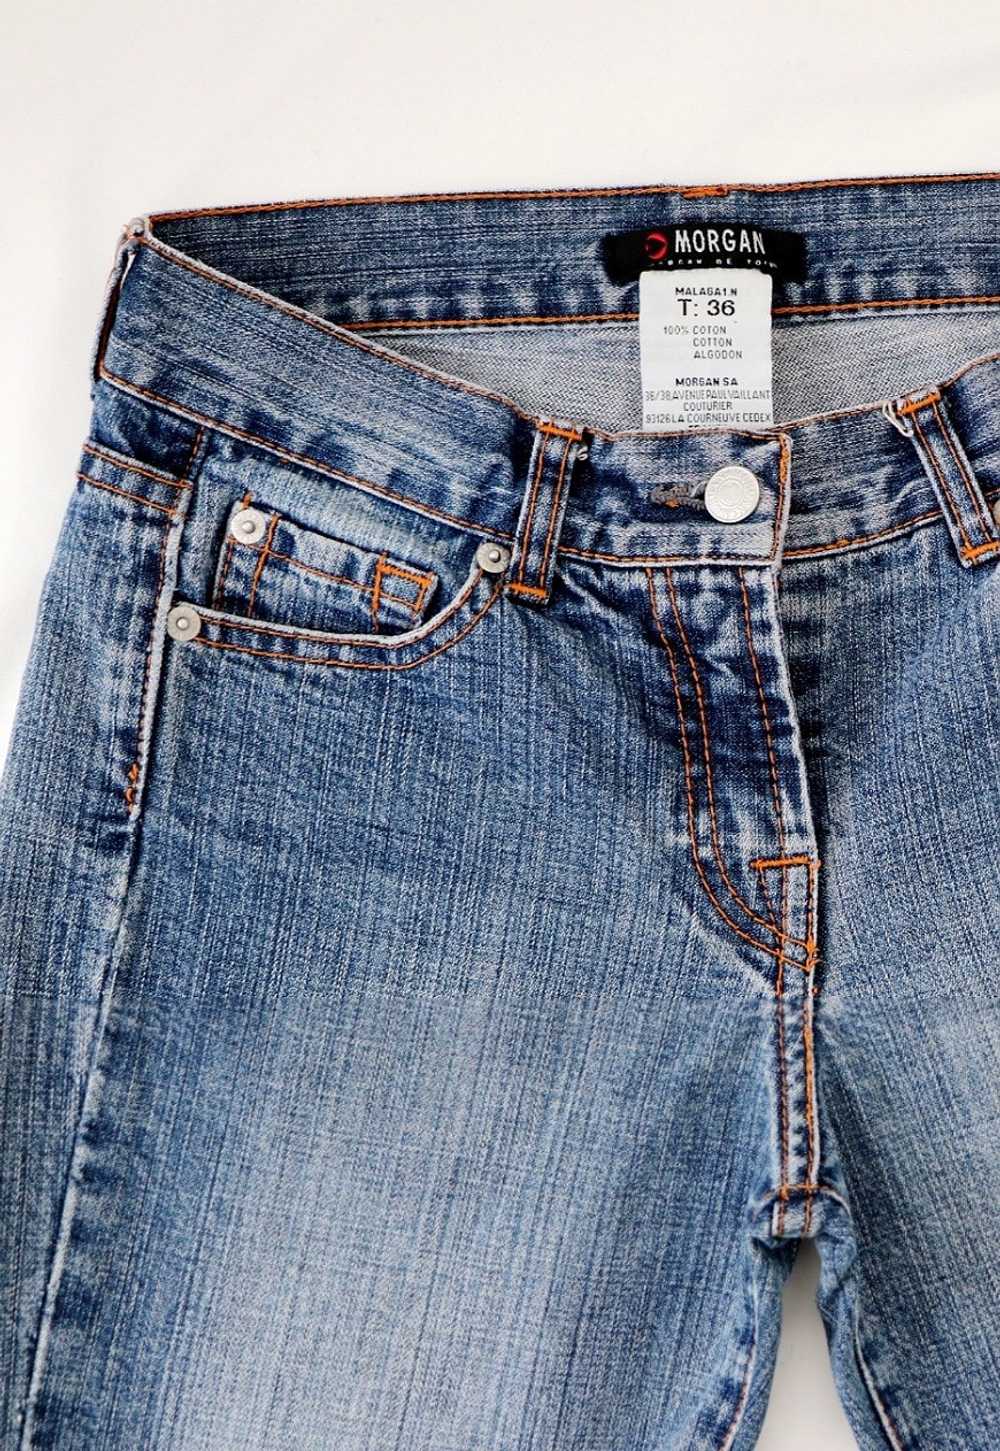 Morgan de Toi Vintage Jeans Flared Bootcut Blue Y… - image 4